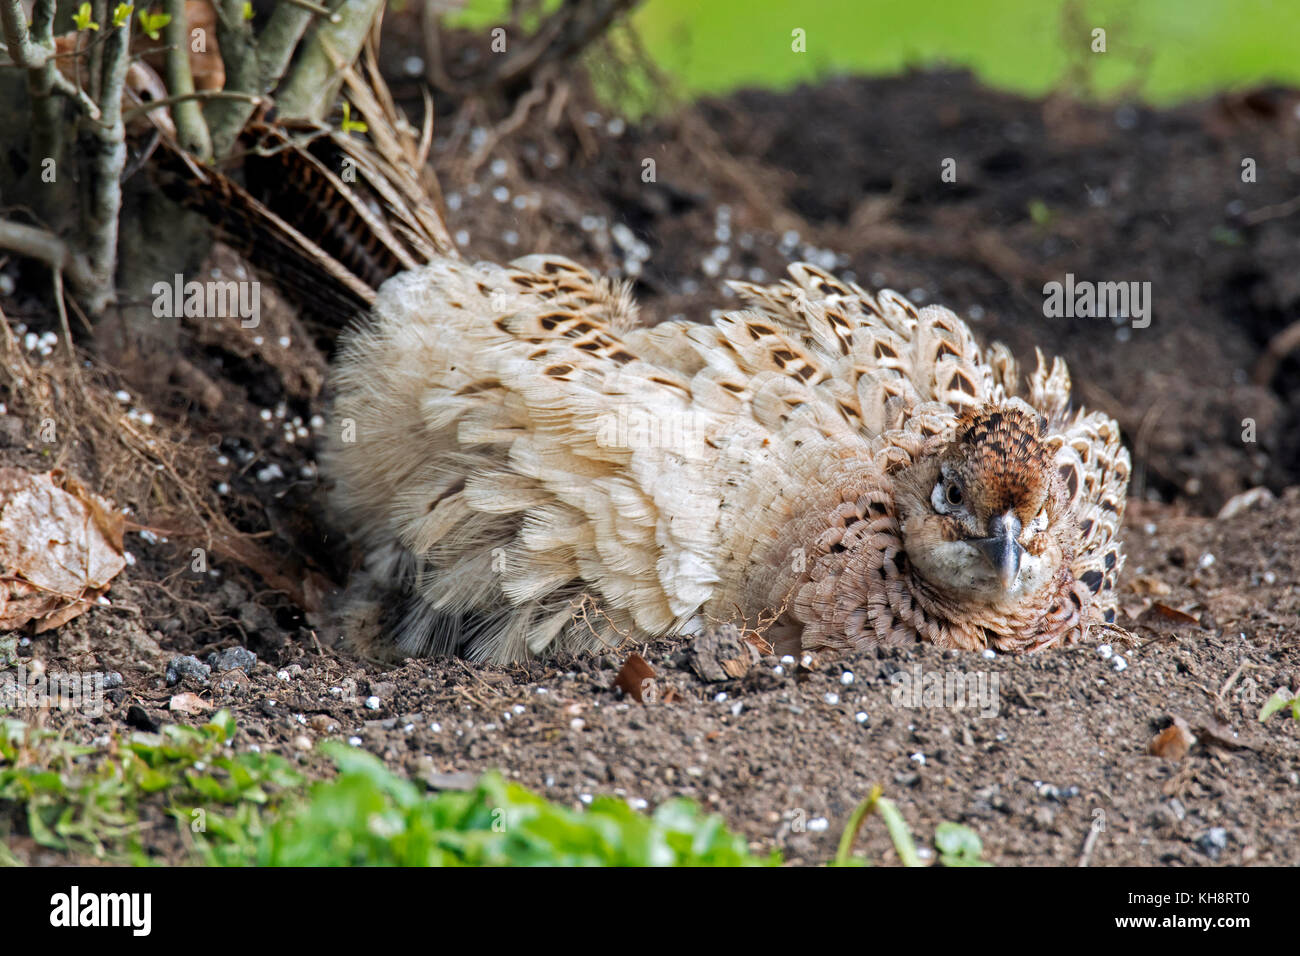 Gemeinsame Fasan/Ring-necked Fasan (Phasianus colchicus) Henne, Sand/Staub baden im Frühjahr Stockfoto